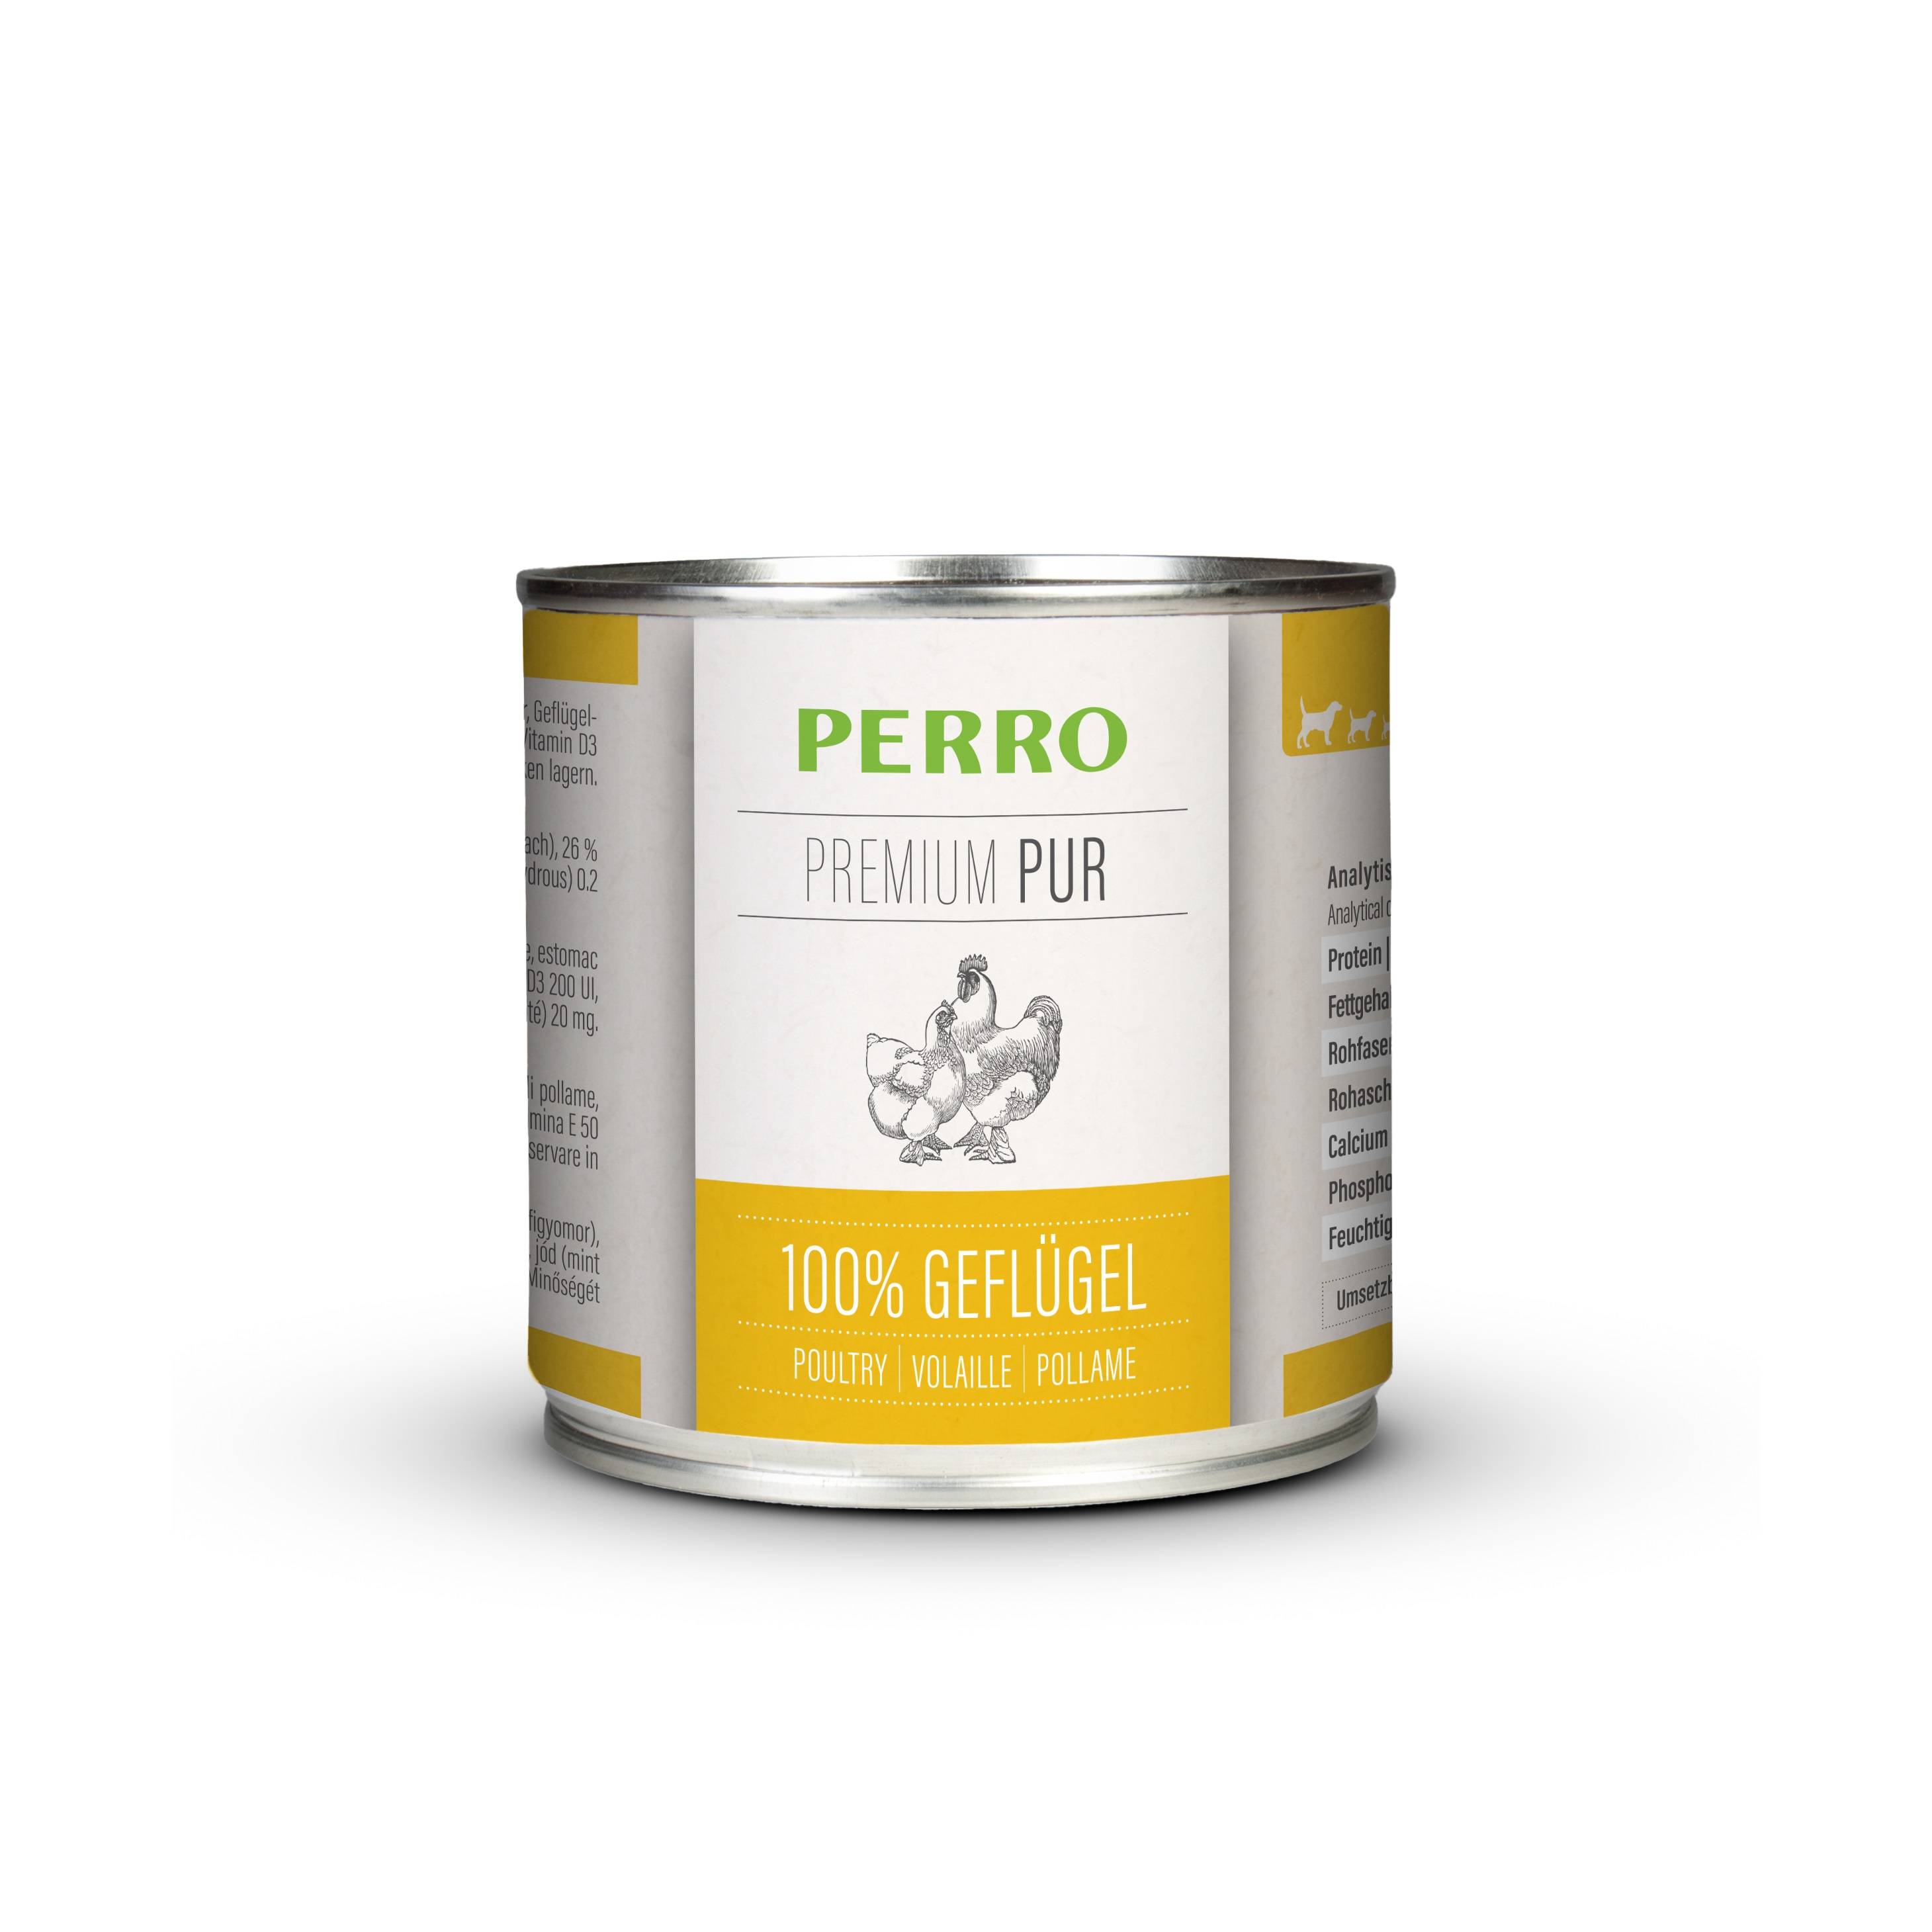 PERRO Premium Pur Geflügel